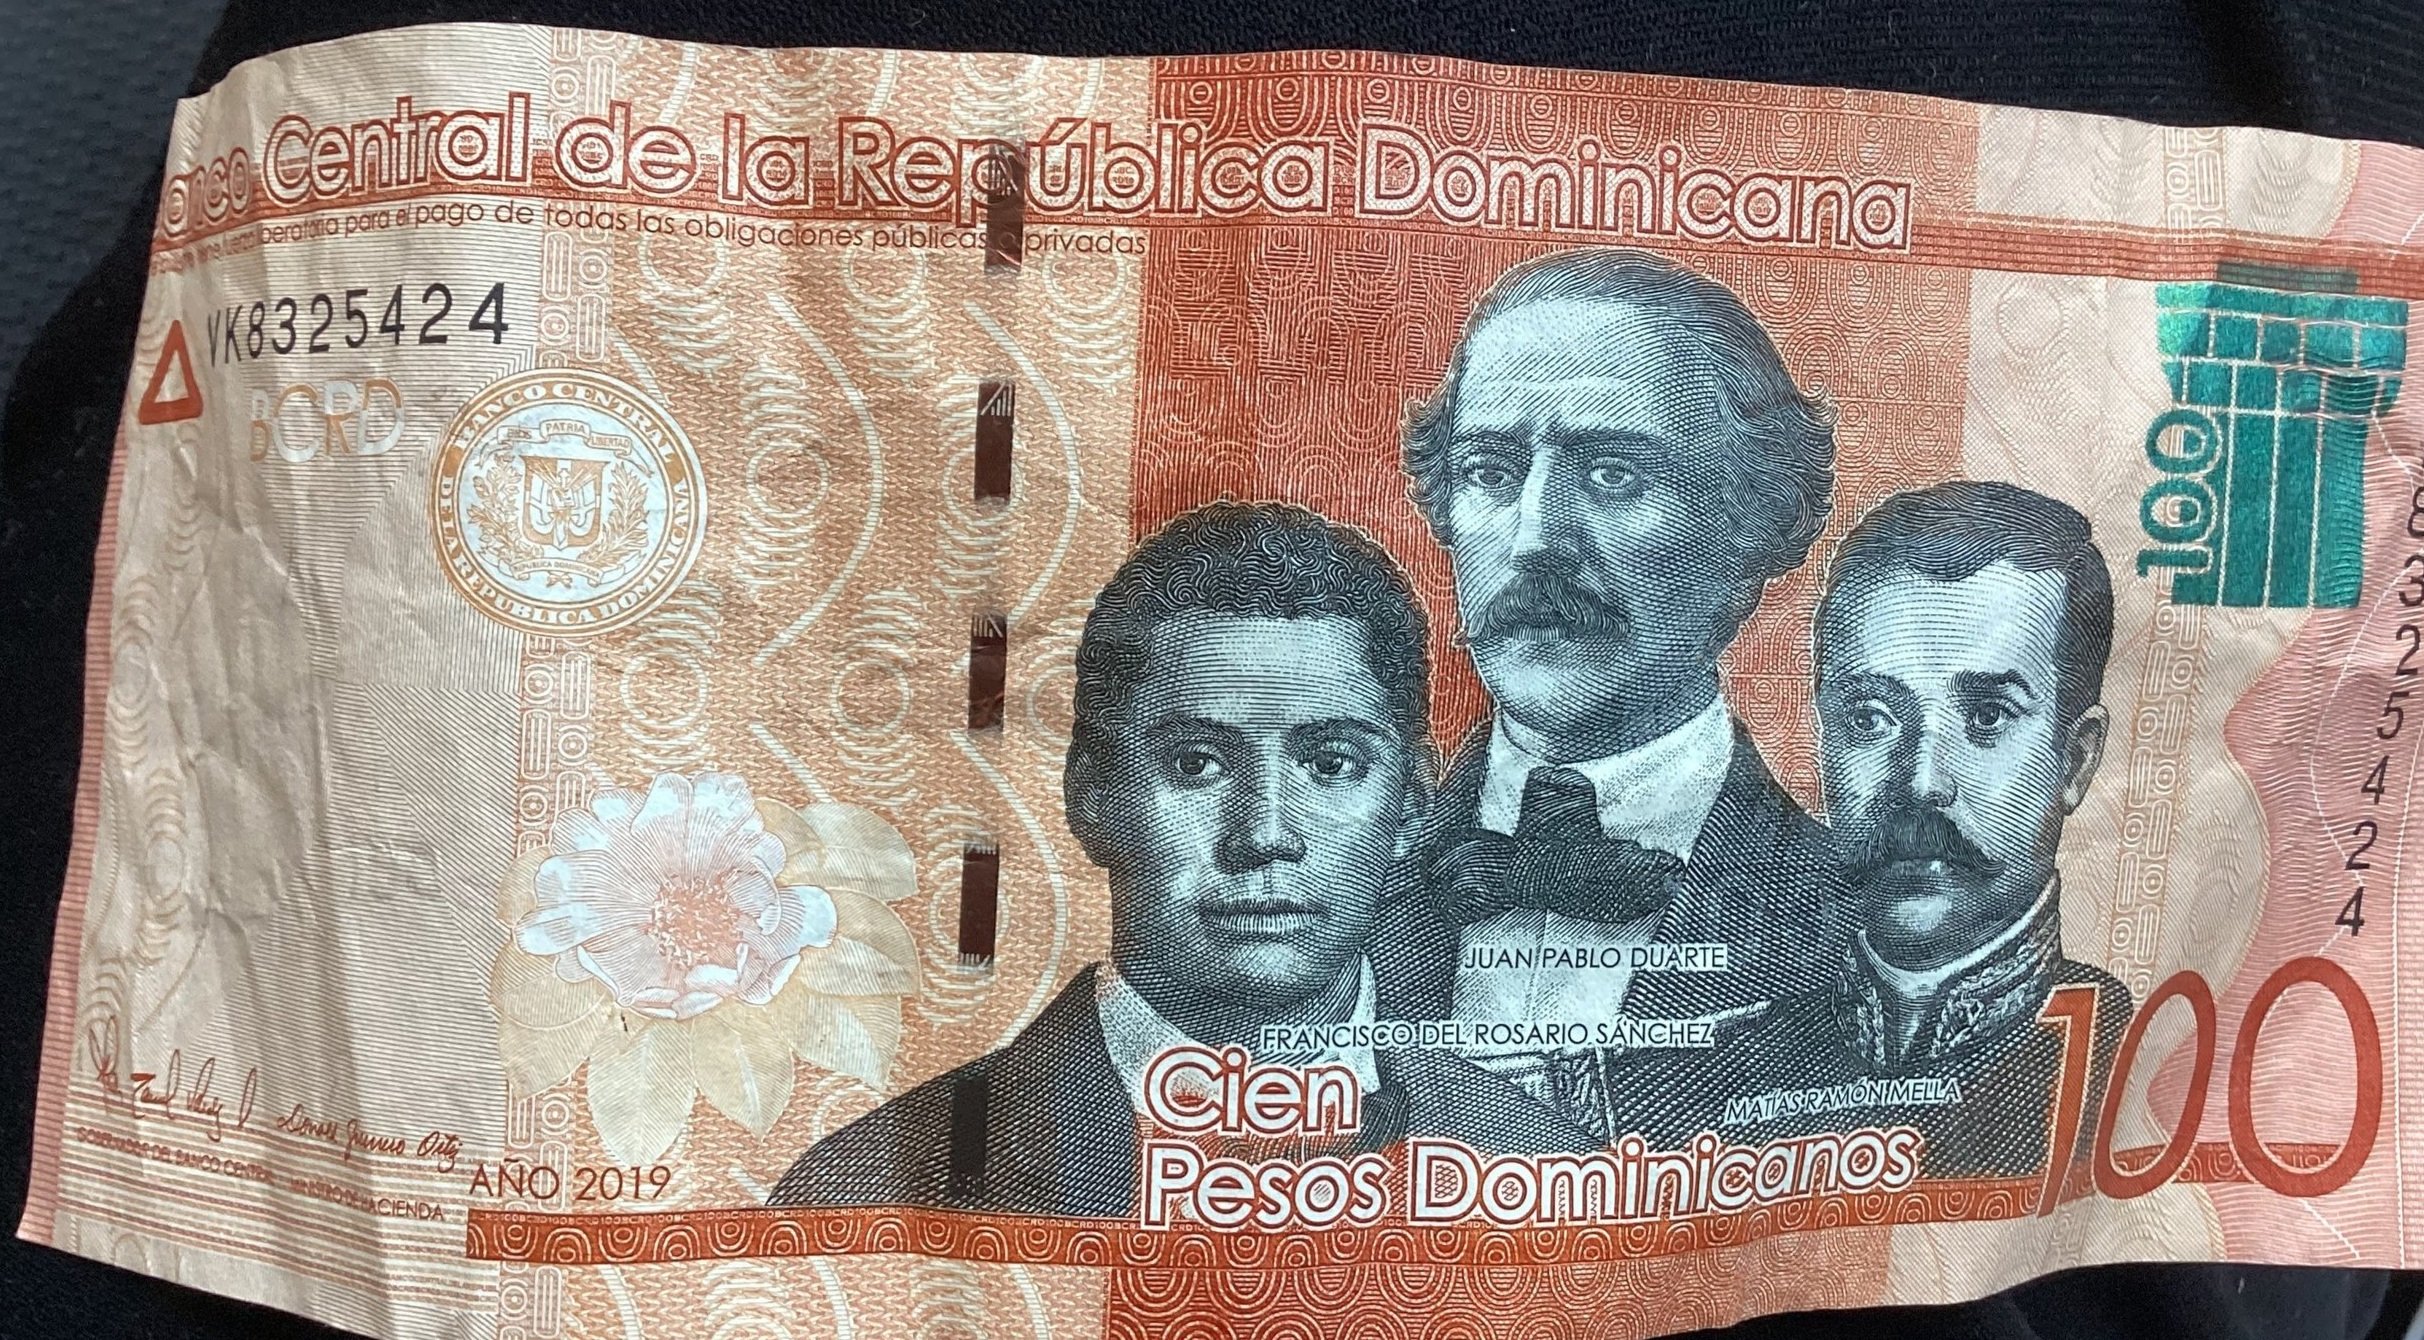 The Dominican Peso